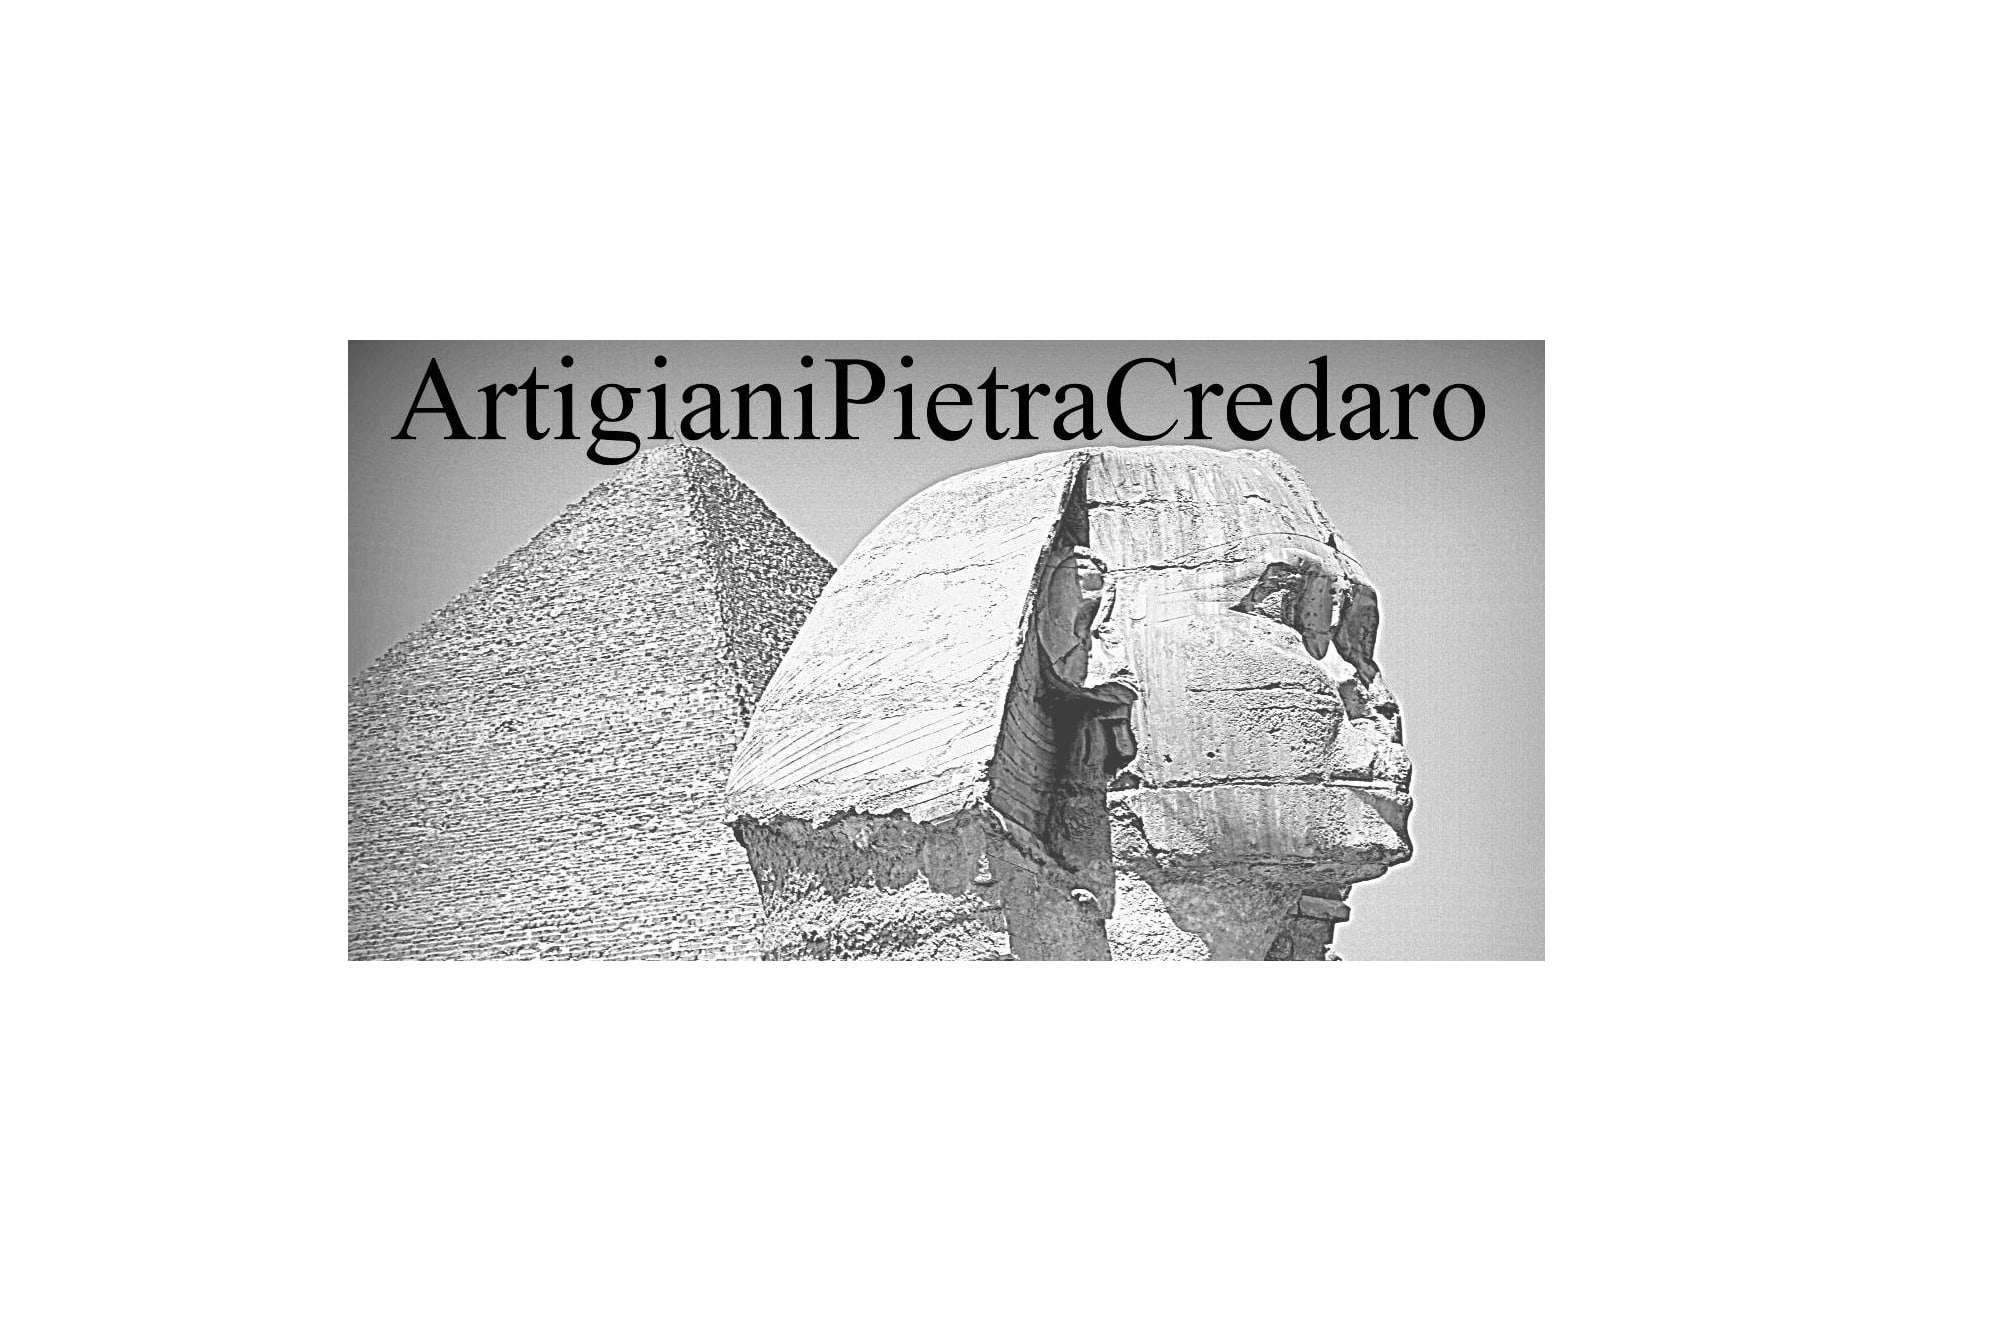 ArtigianiPietraCredaro - Rivestimenti in Pietra Naturale per ville ed abitazioni